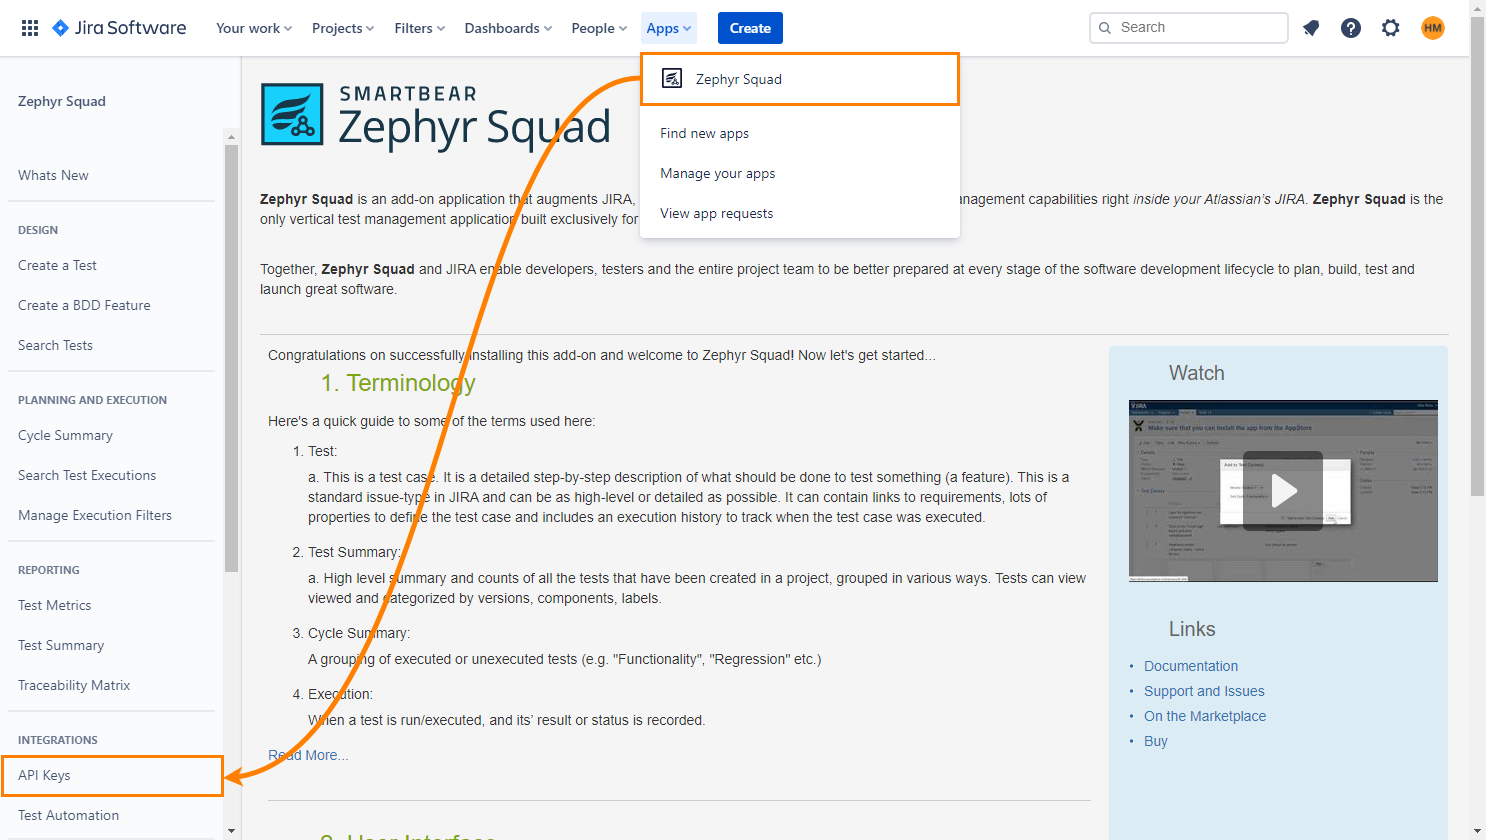 Zephyr Squad integration: Get access and secret keys